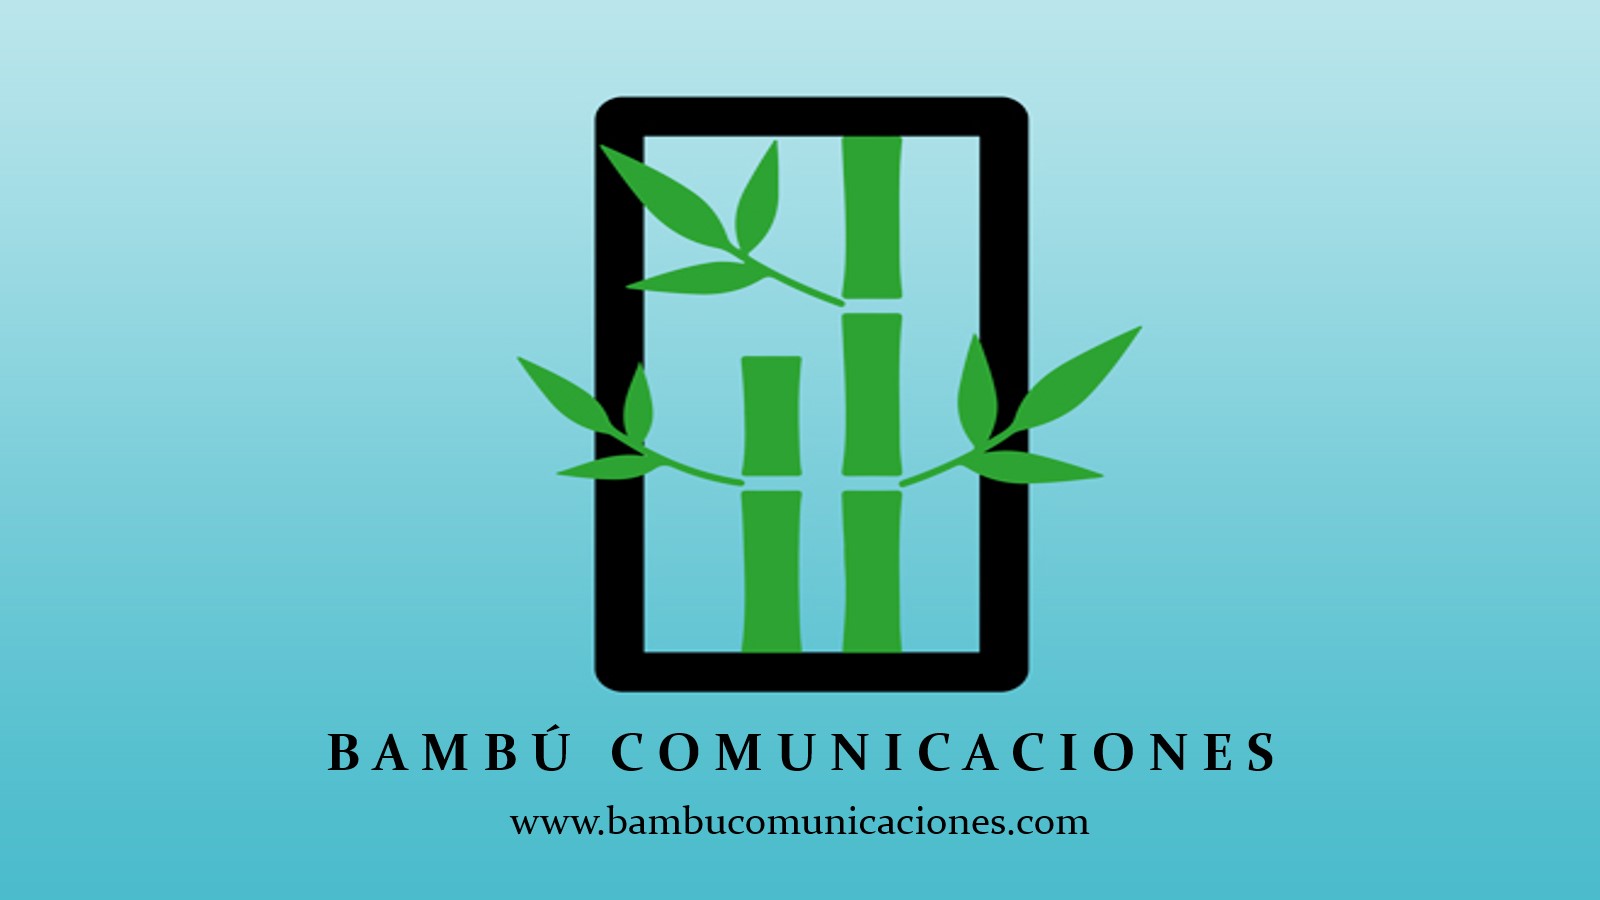 BAMBU COMUNICACIONES S.A.S.